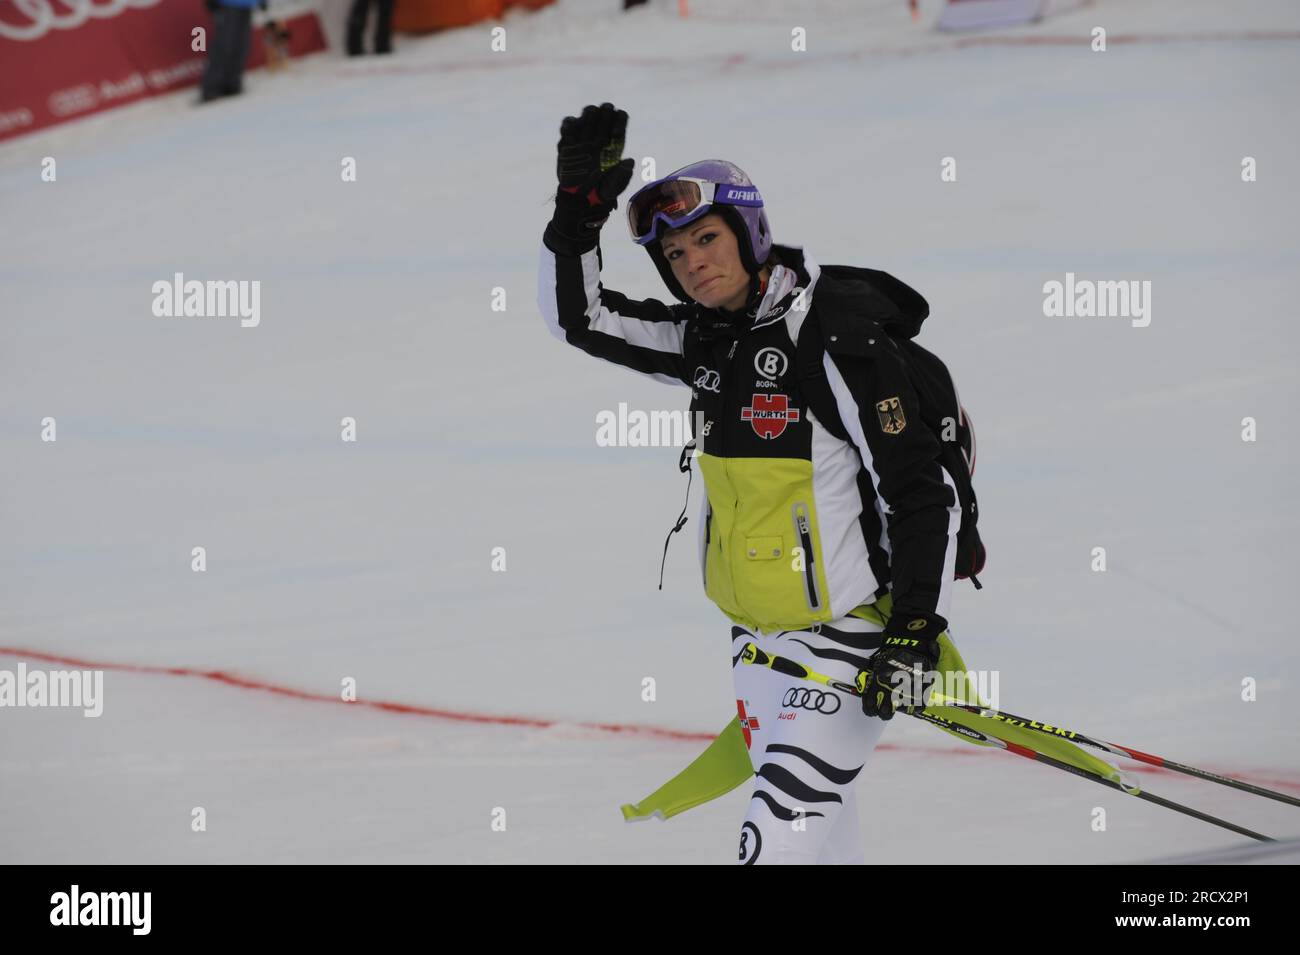 Maria Riesch verläßt enttäuscht zu Fuß die Rennstrecke Riesenslalom der Frauen am 17.2.2011 Ski Alpin Weltmeisterschaft vom 7.-20.2. 2011 in Garmisch - Partenkirchen Partenkirchen Stock Photo